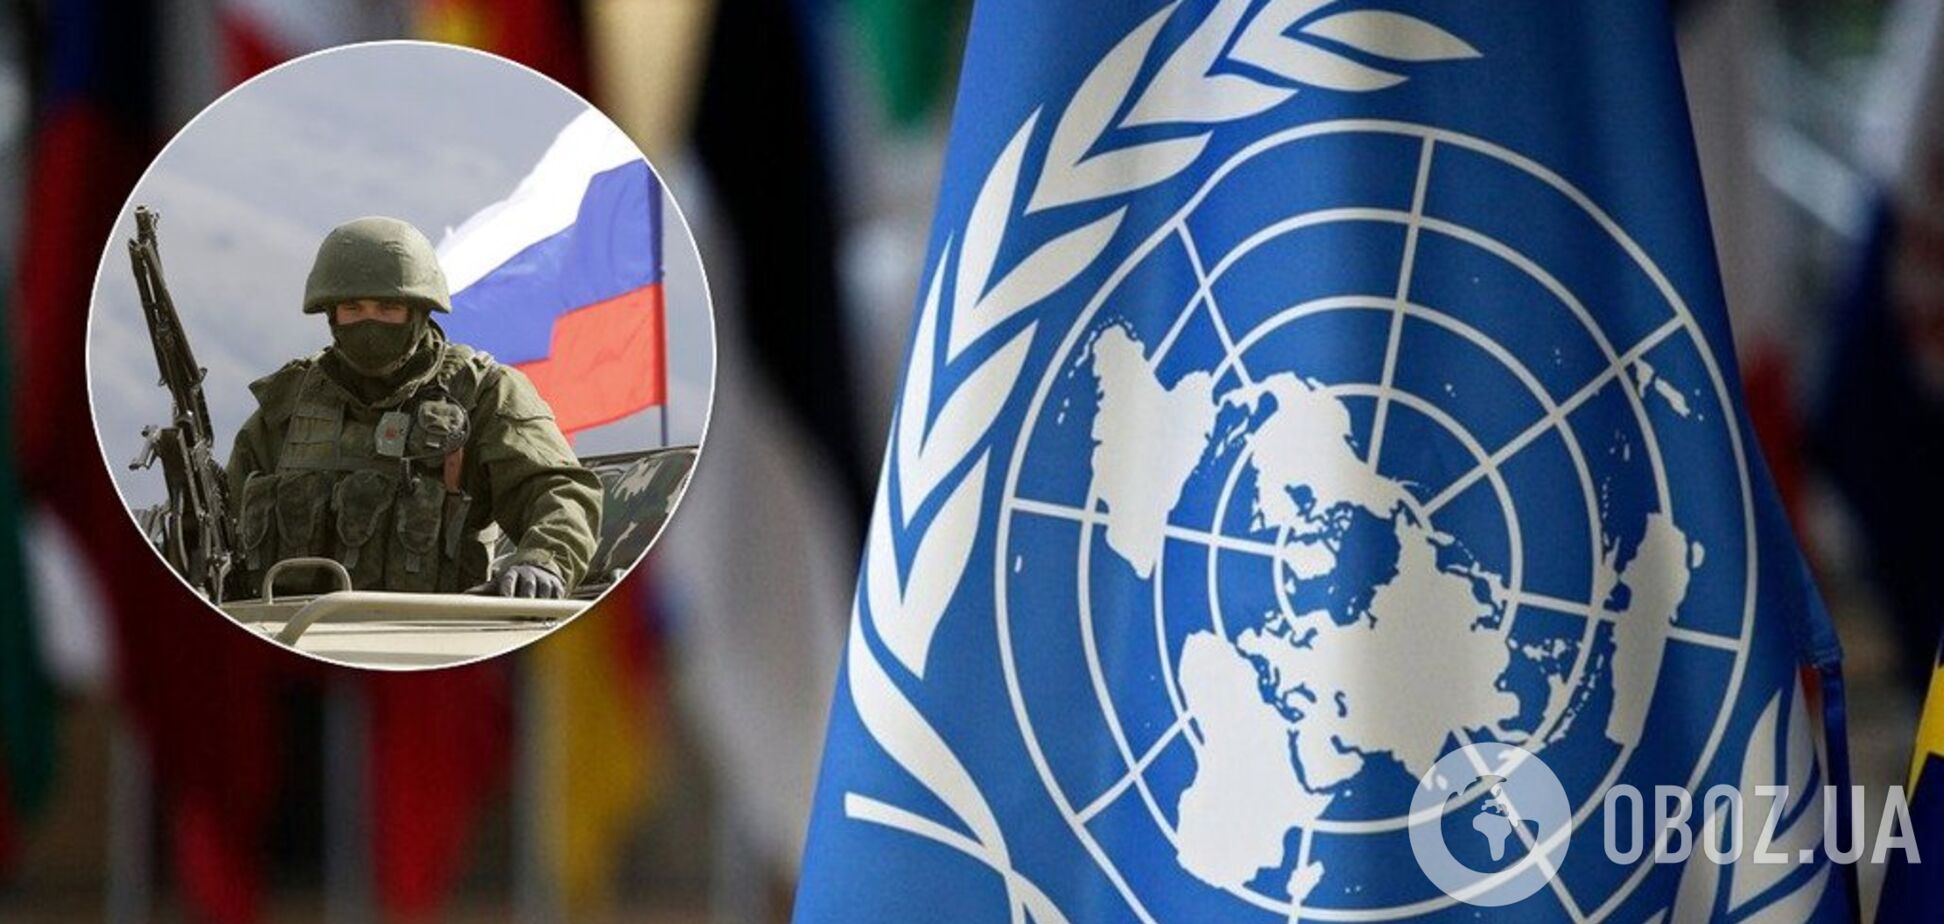  Украина обратилась к ООН из-за вторжения РФ